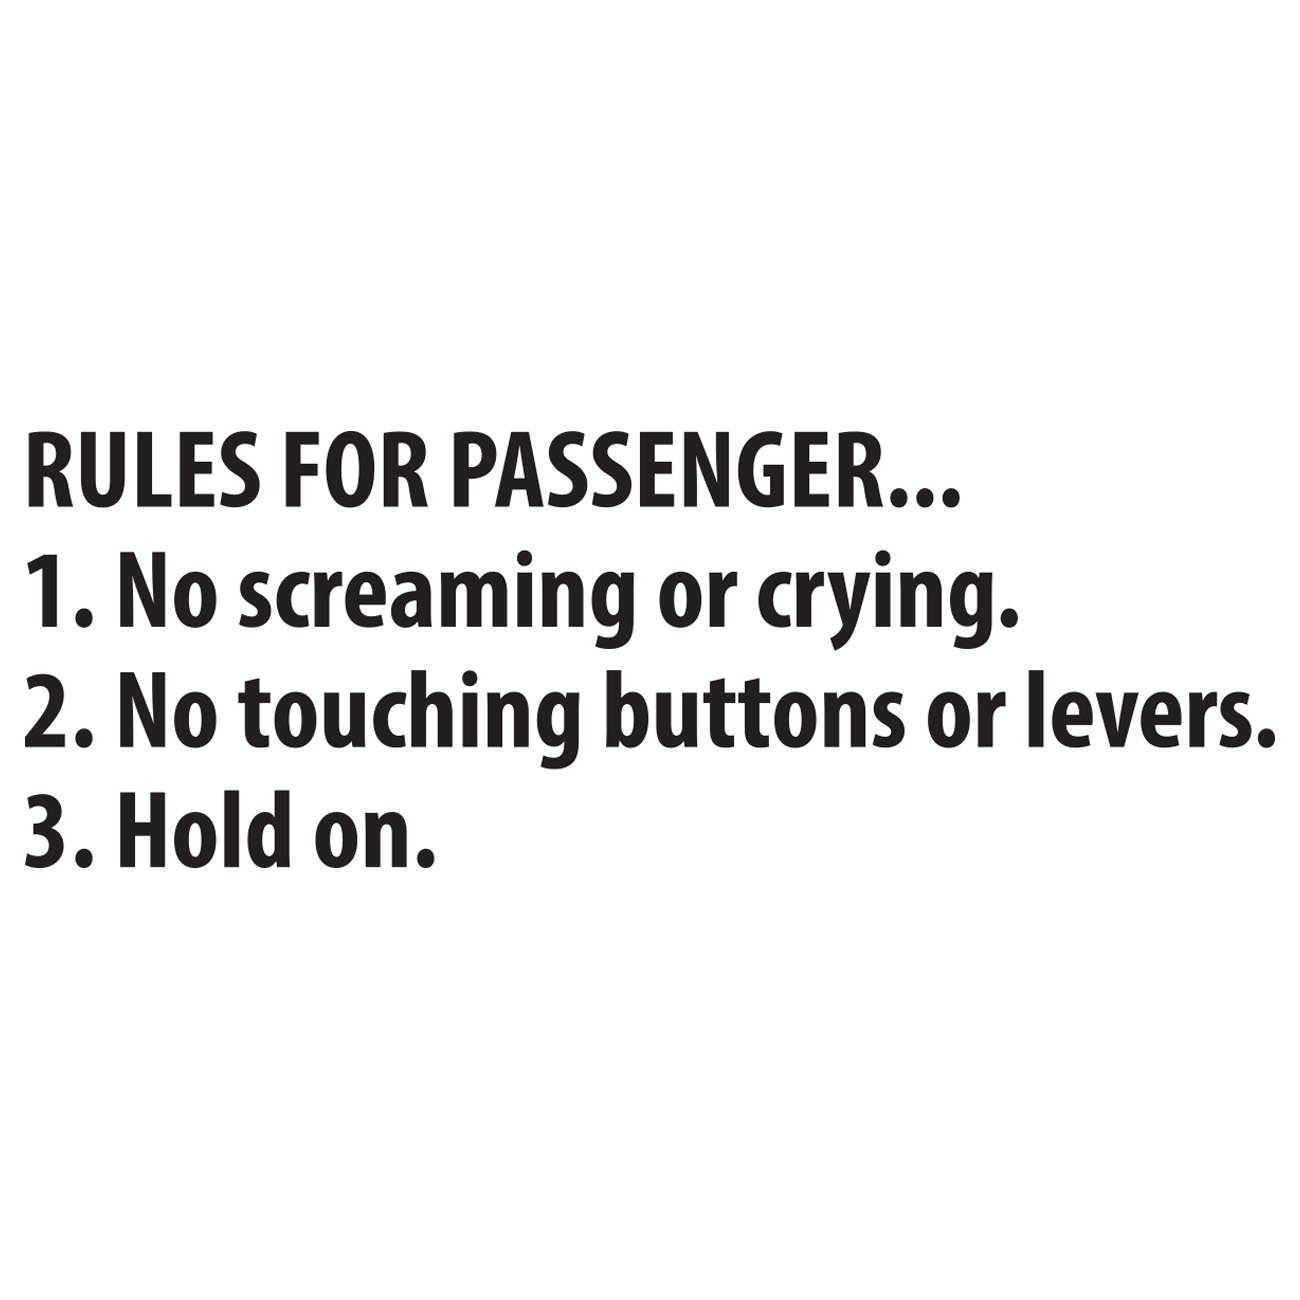 Rules for passenger